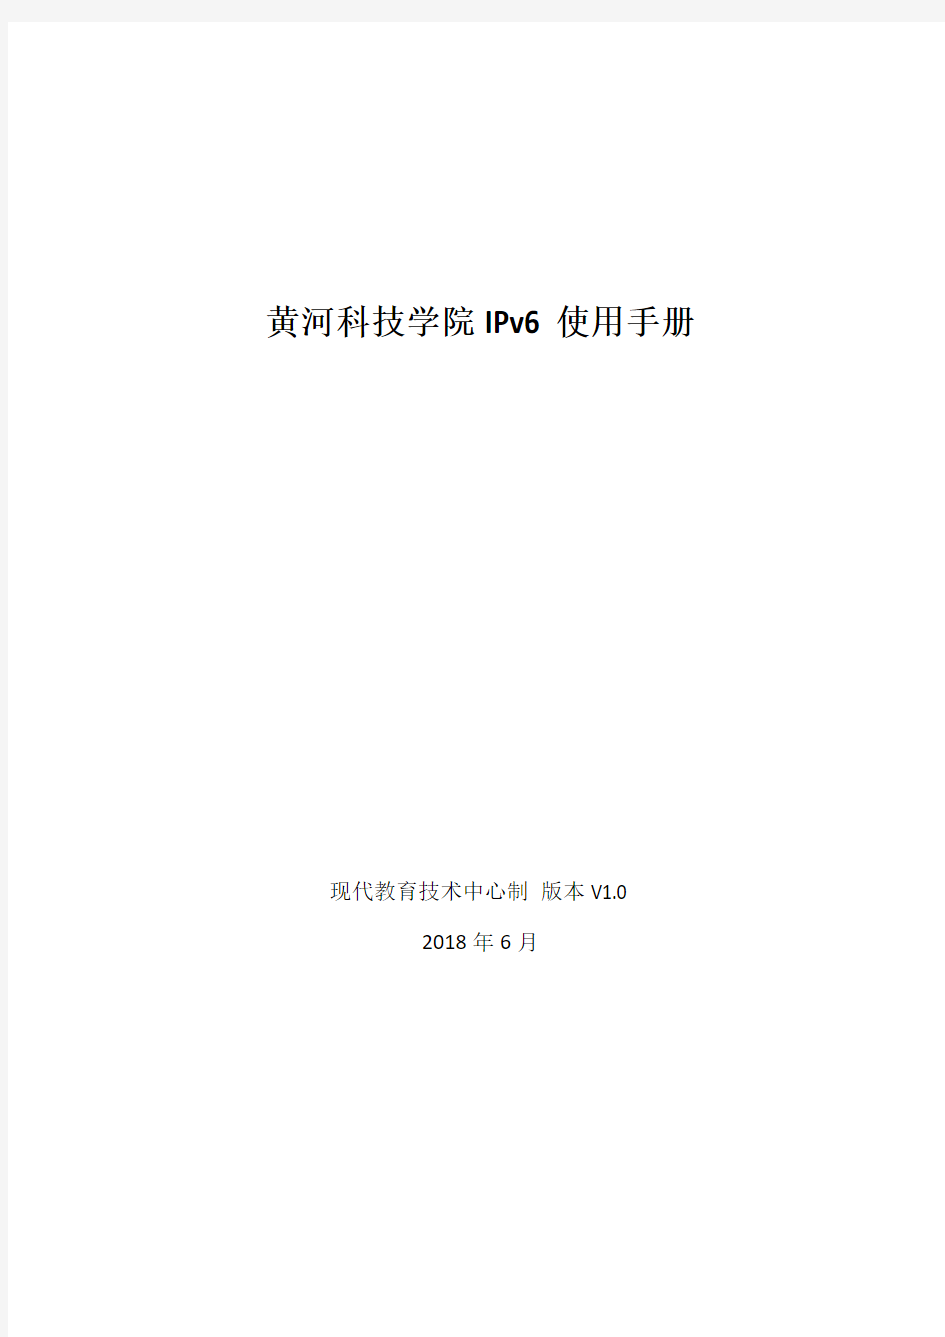 黄河科技学院IPv6使用手册